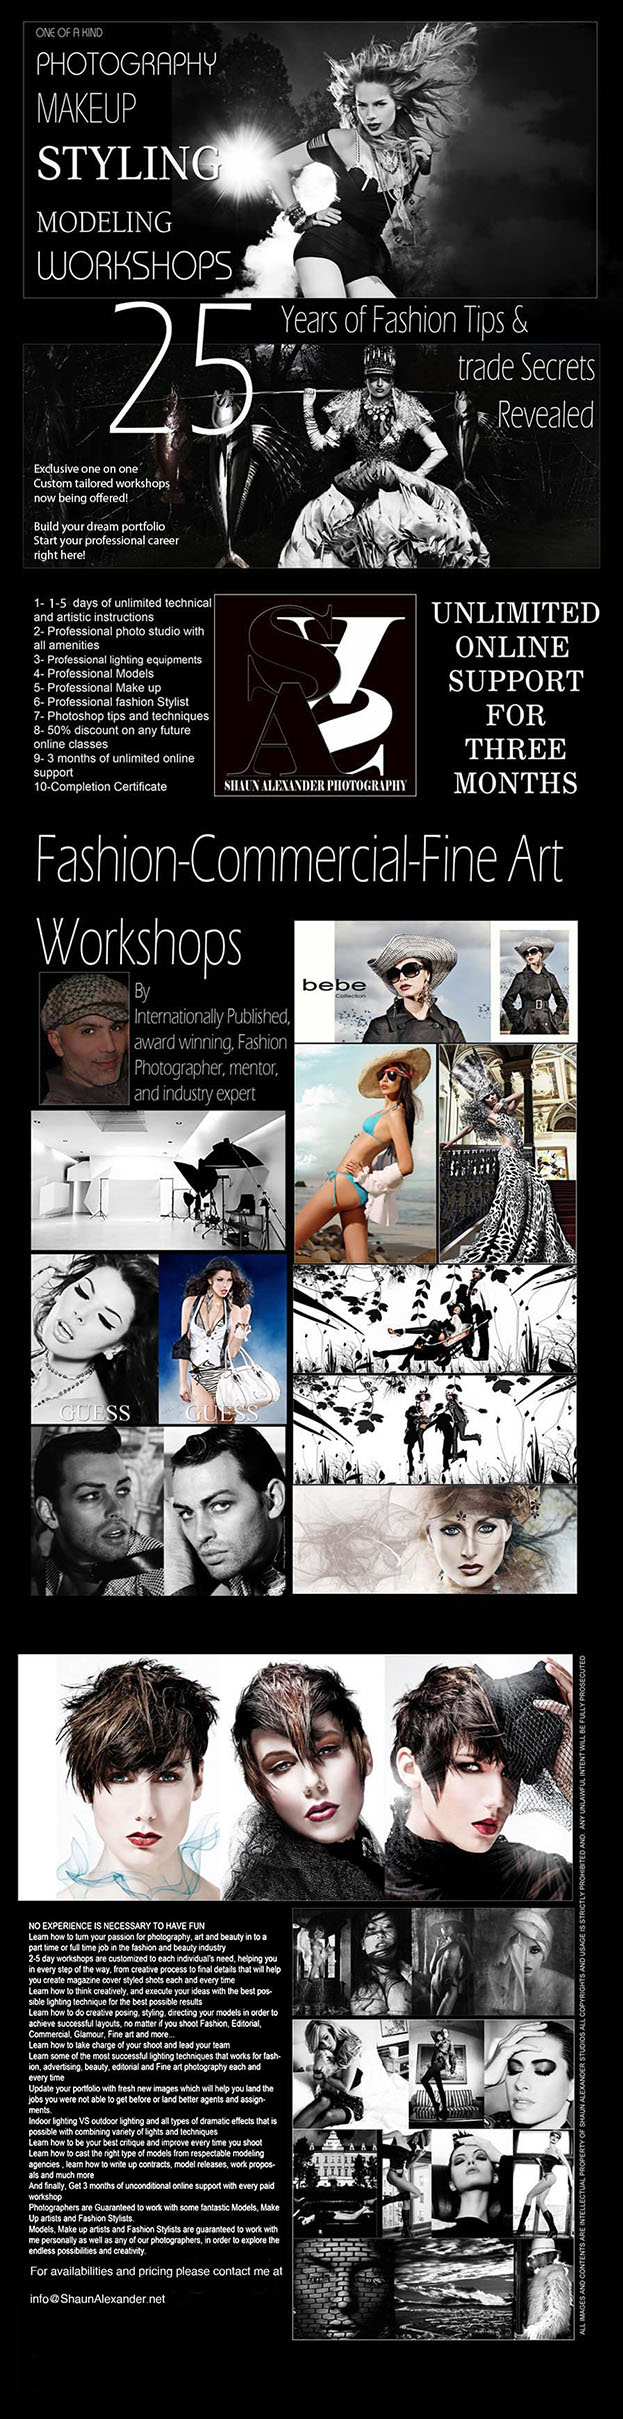 Los Angeles workshops